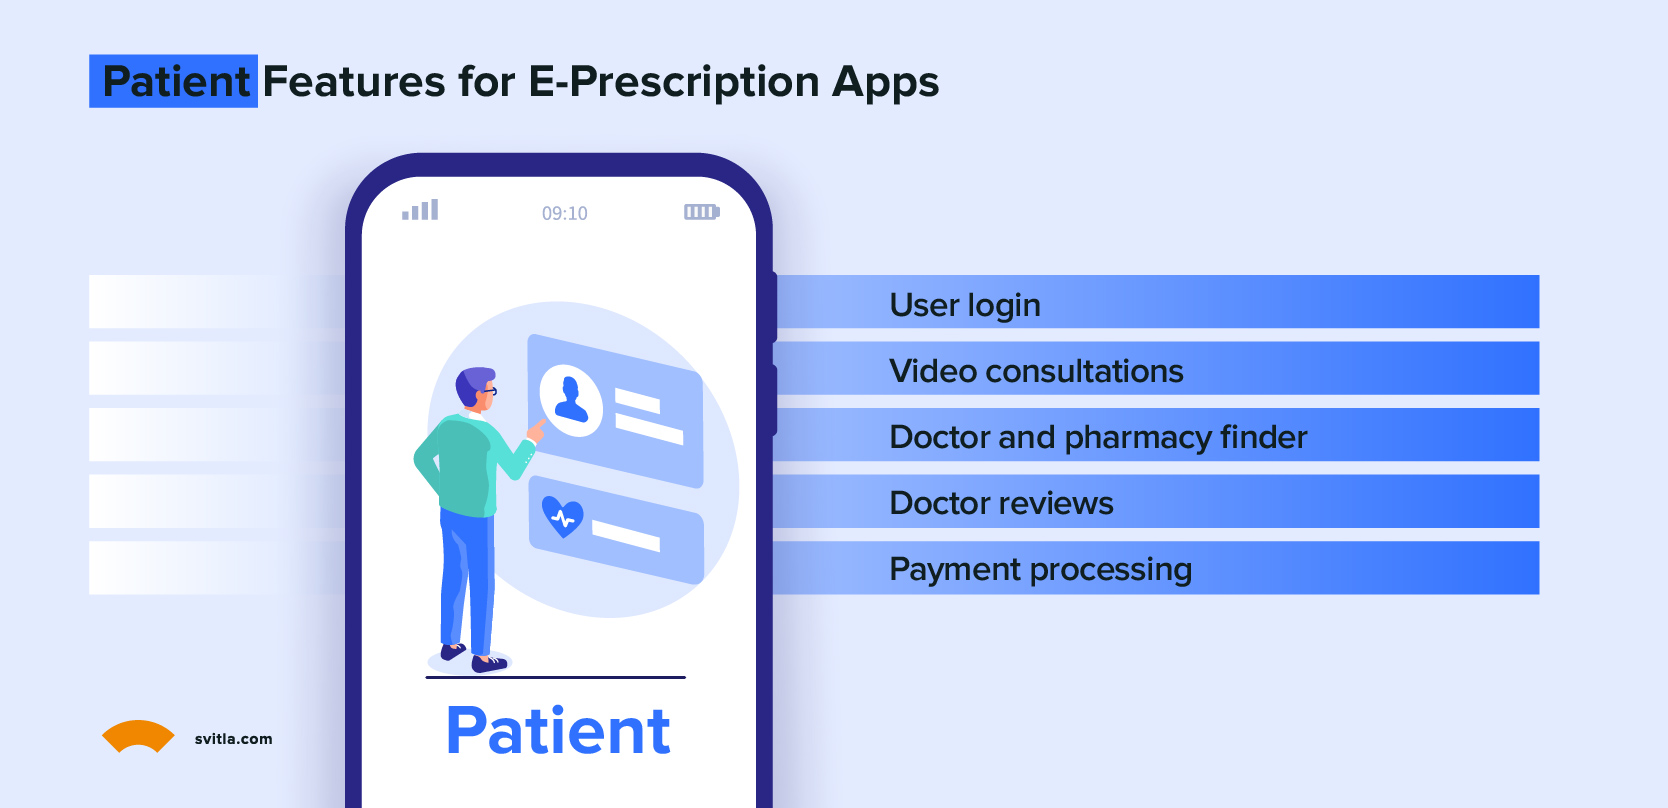 Patient features for e-prescription apps